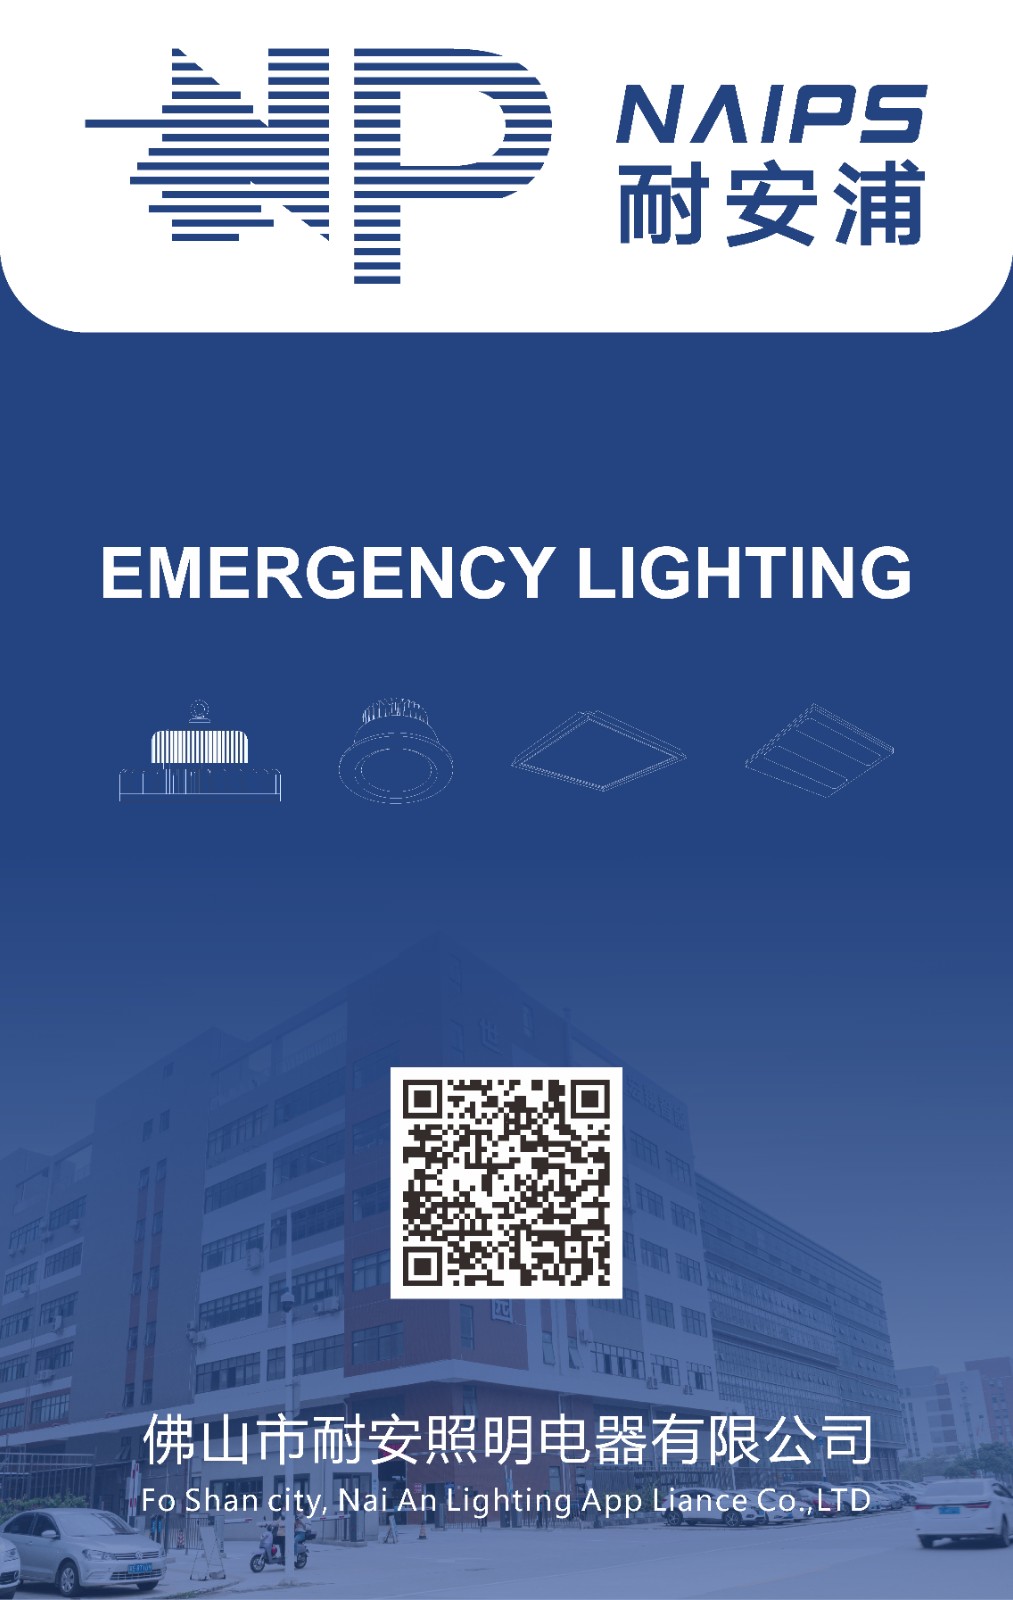 COTV直播-佛山市耐安照明电器有限公司专业研发，生产销售LED消防应急灯具，消防应急电源等产品。